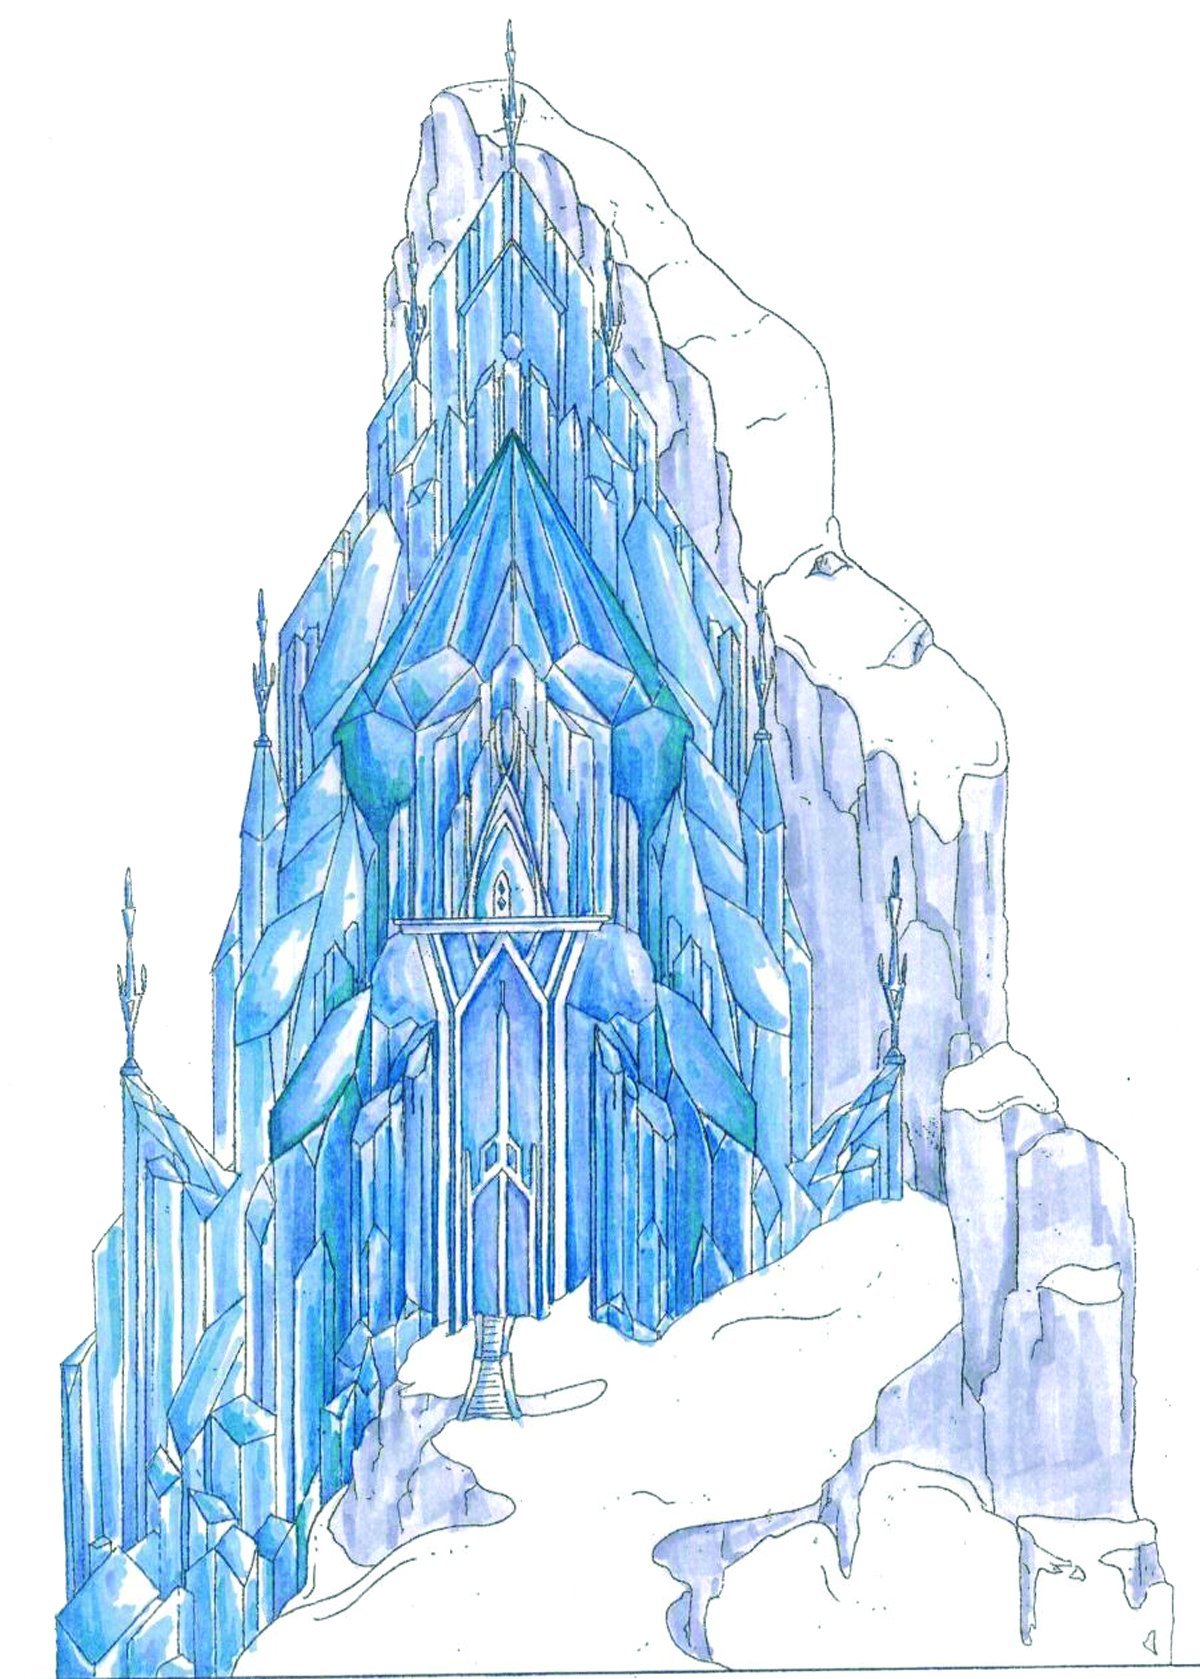 Дворец для снежной королевы